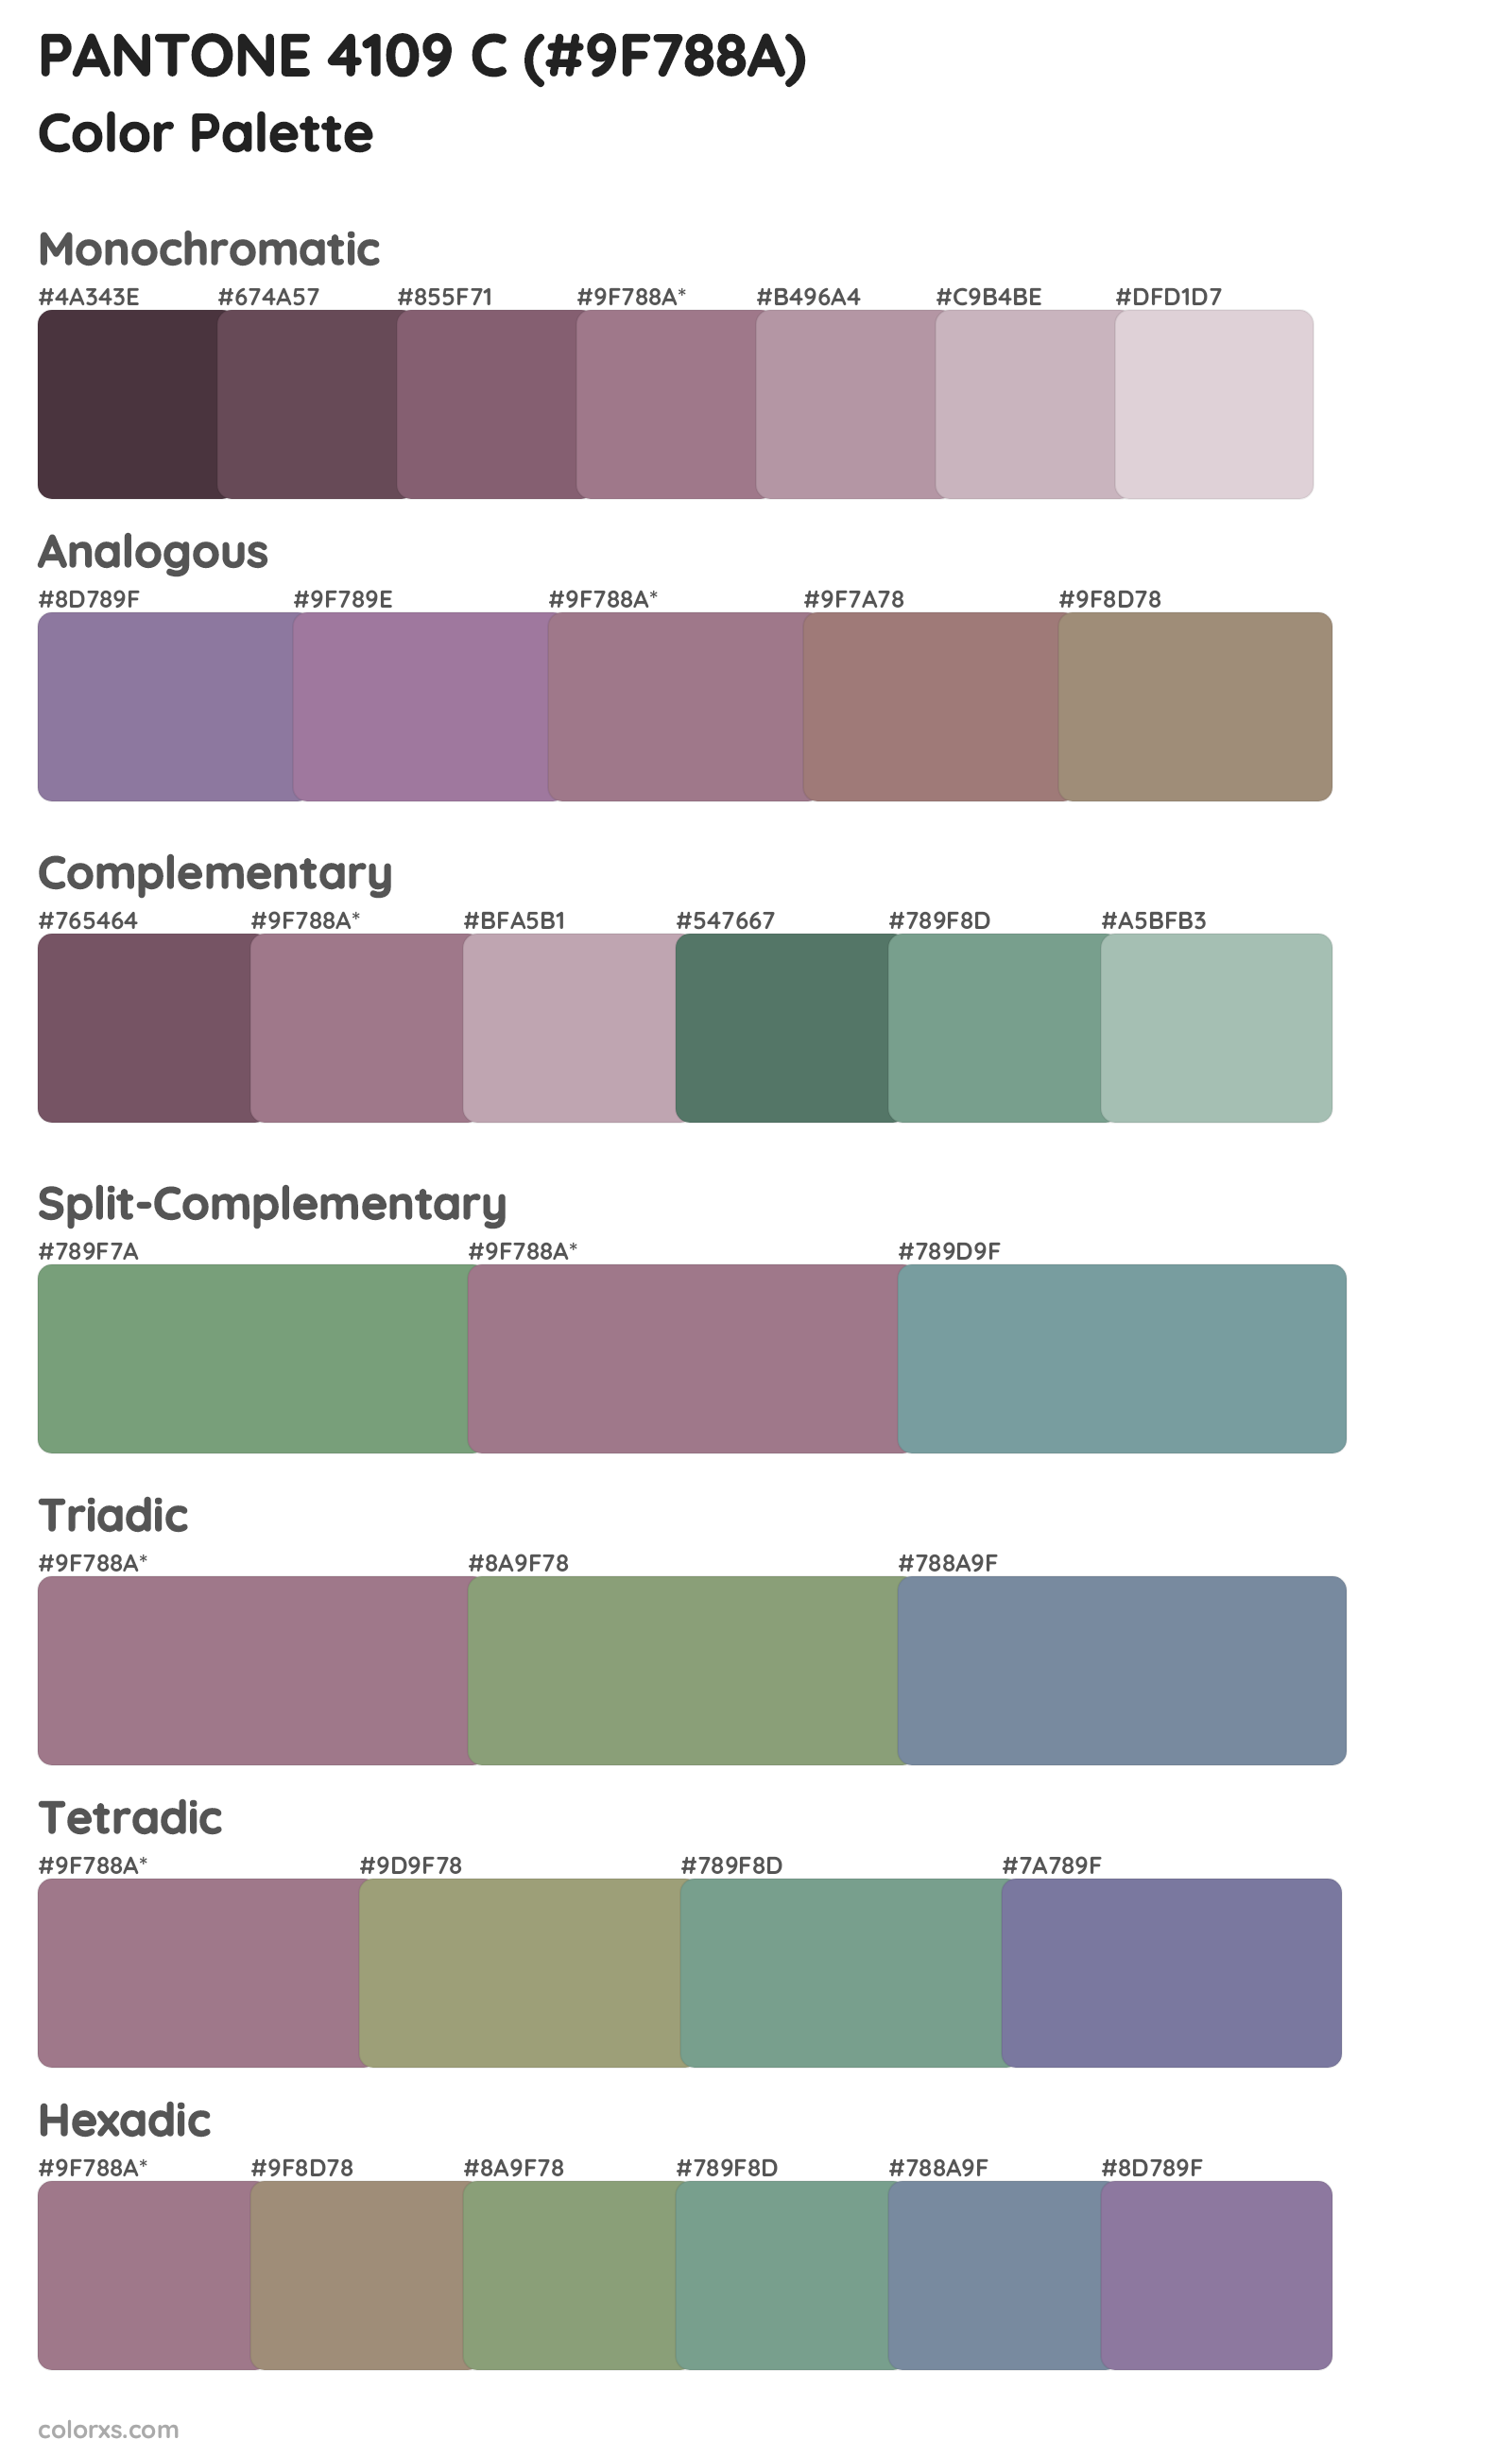 PANTONE 4109 C Color Scheme Palettes